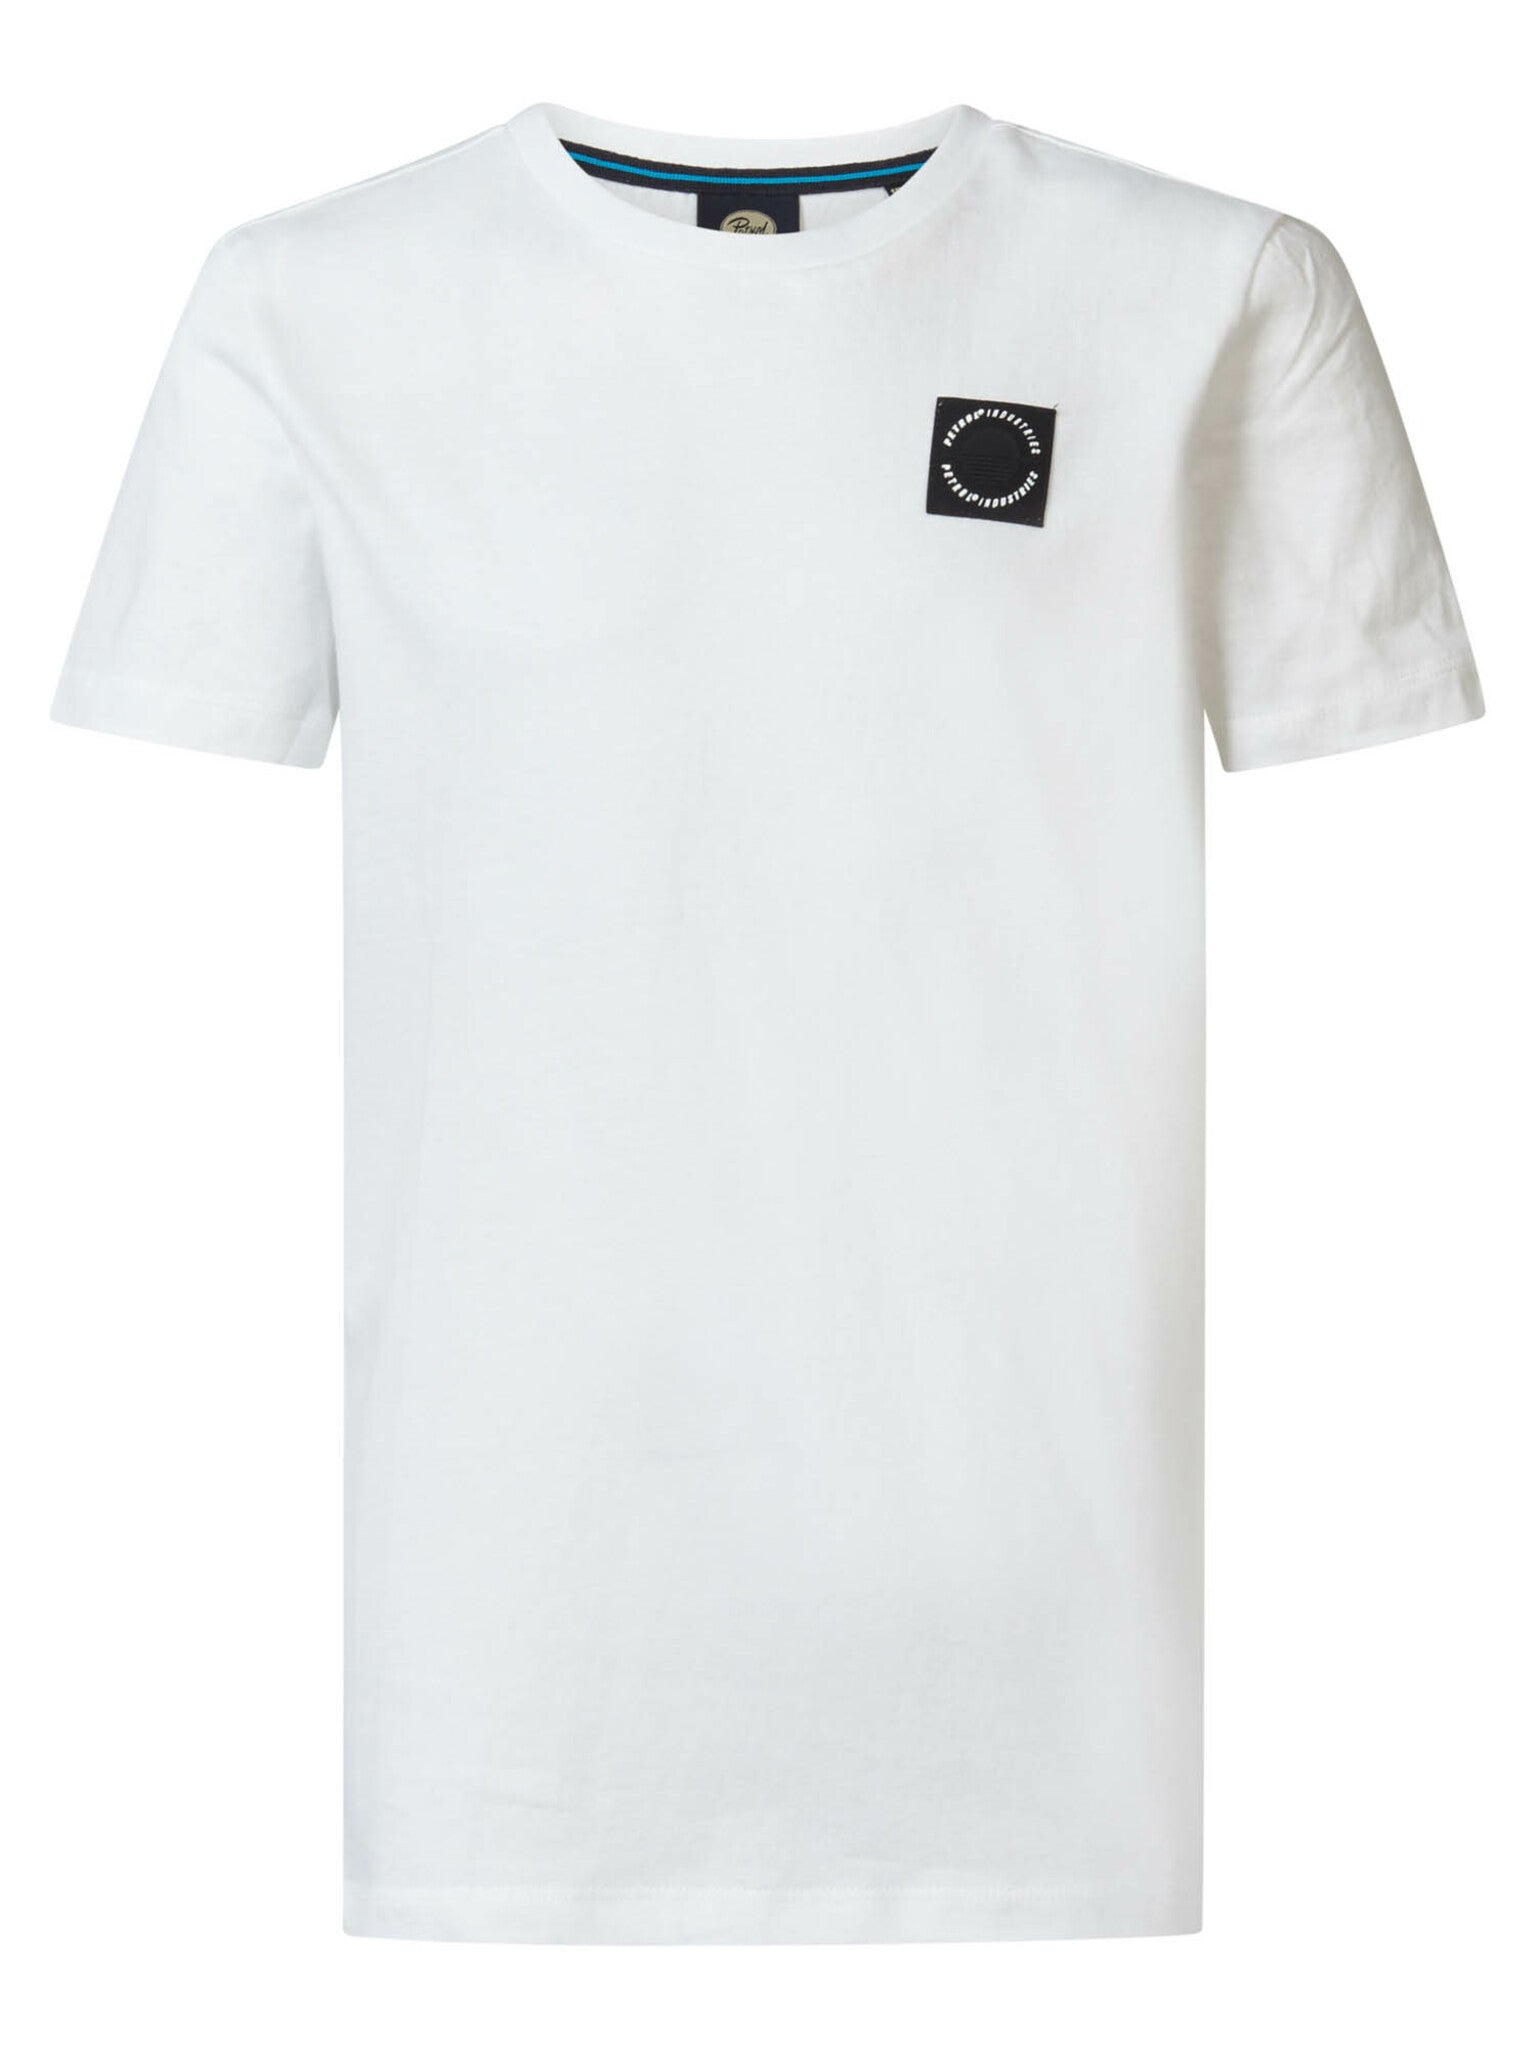 Jongens Boys T-Shirt SS Round Neck van Petrol in de kleur Bright White in maat 176.